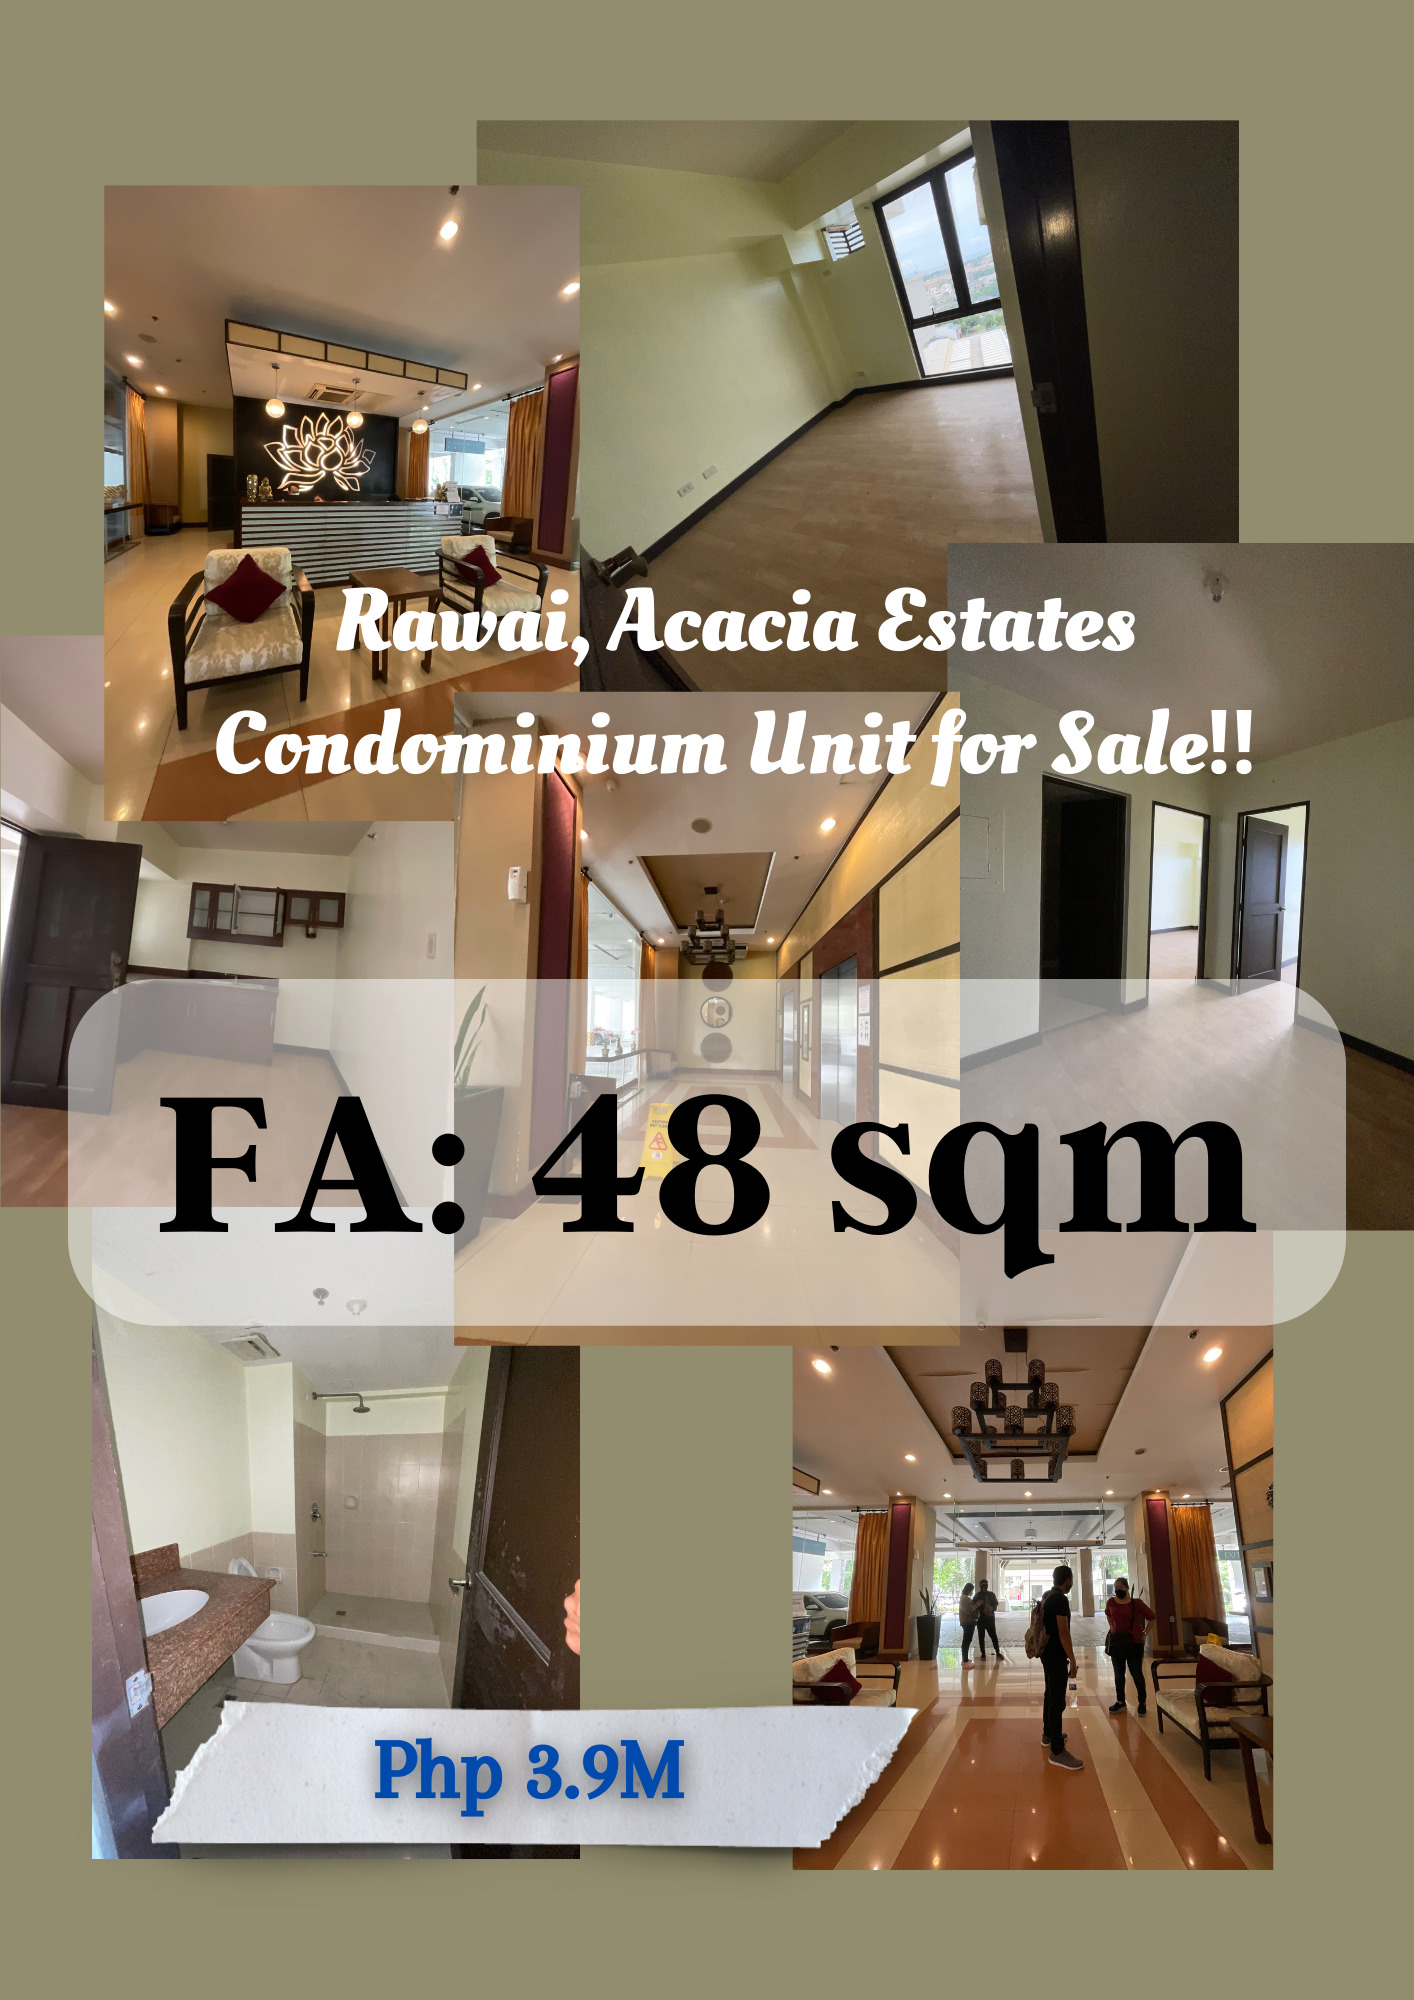 Rawai, Acacia Estates Condominium Unit for Sale in Taguig‼️